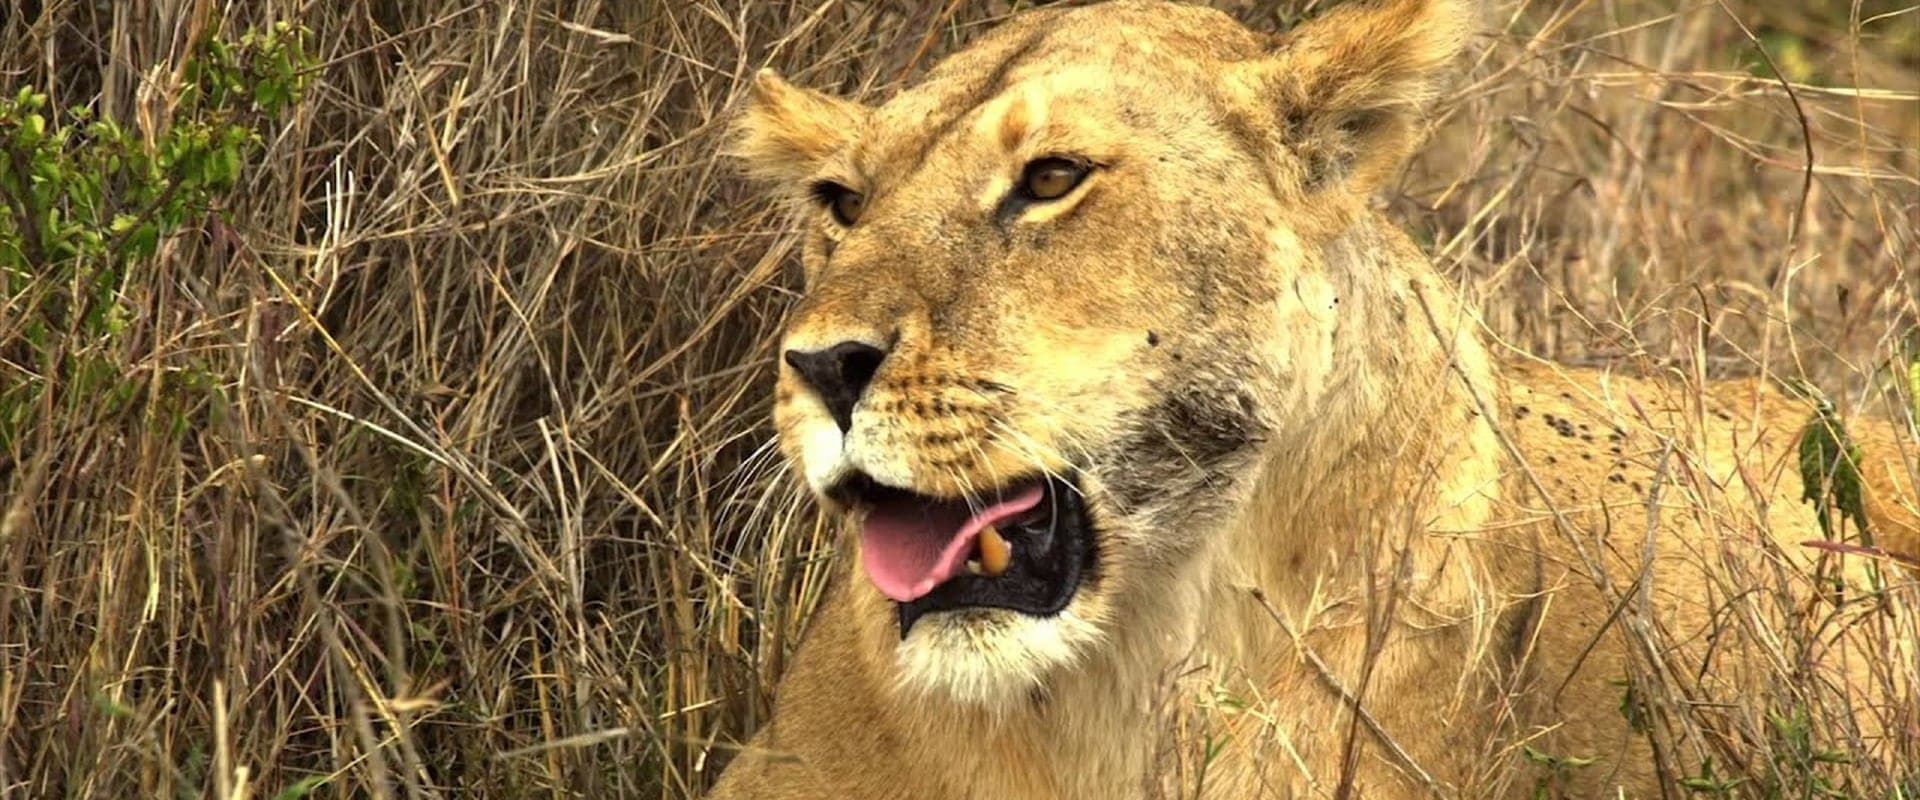 Serengeti: Nature's Greatest Journey